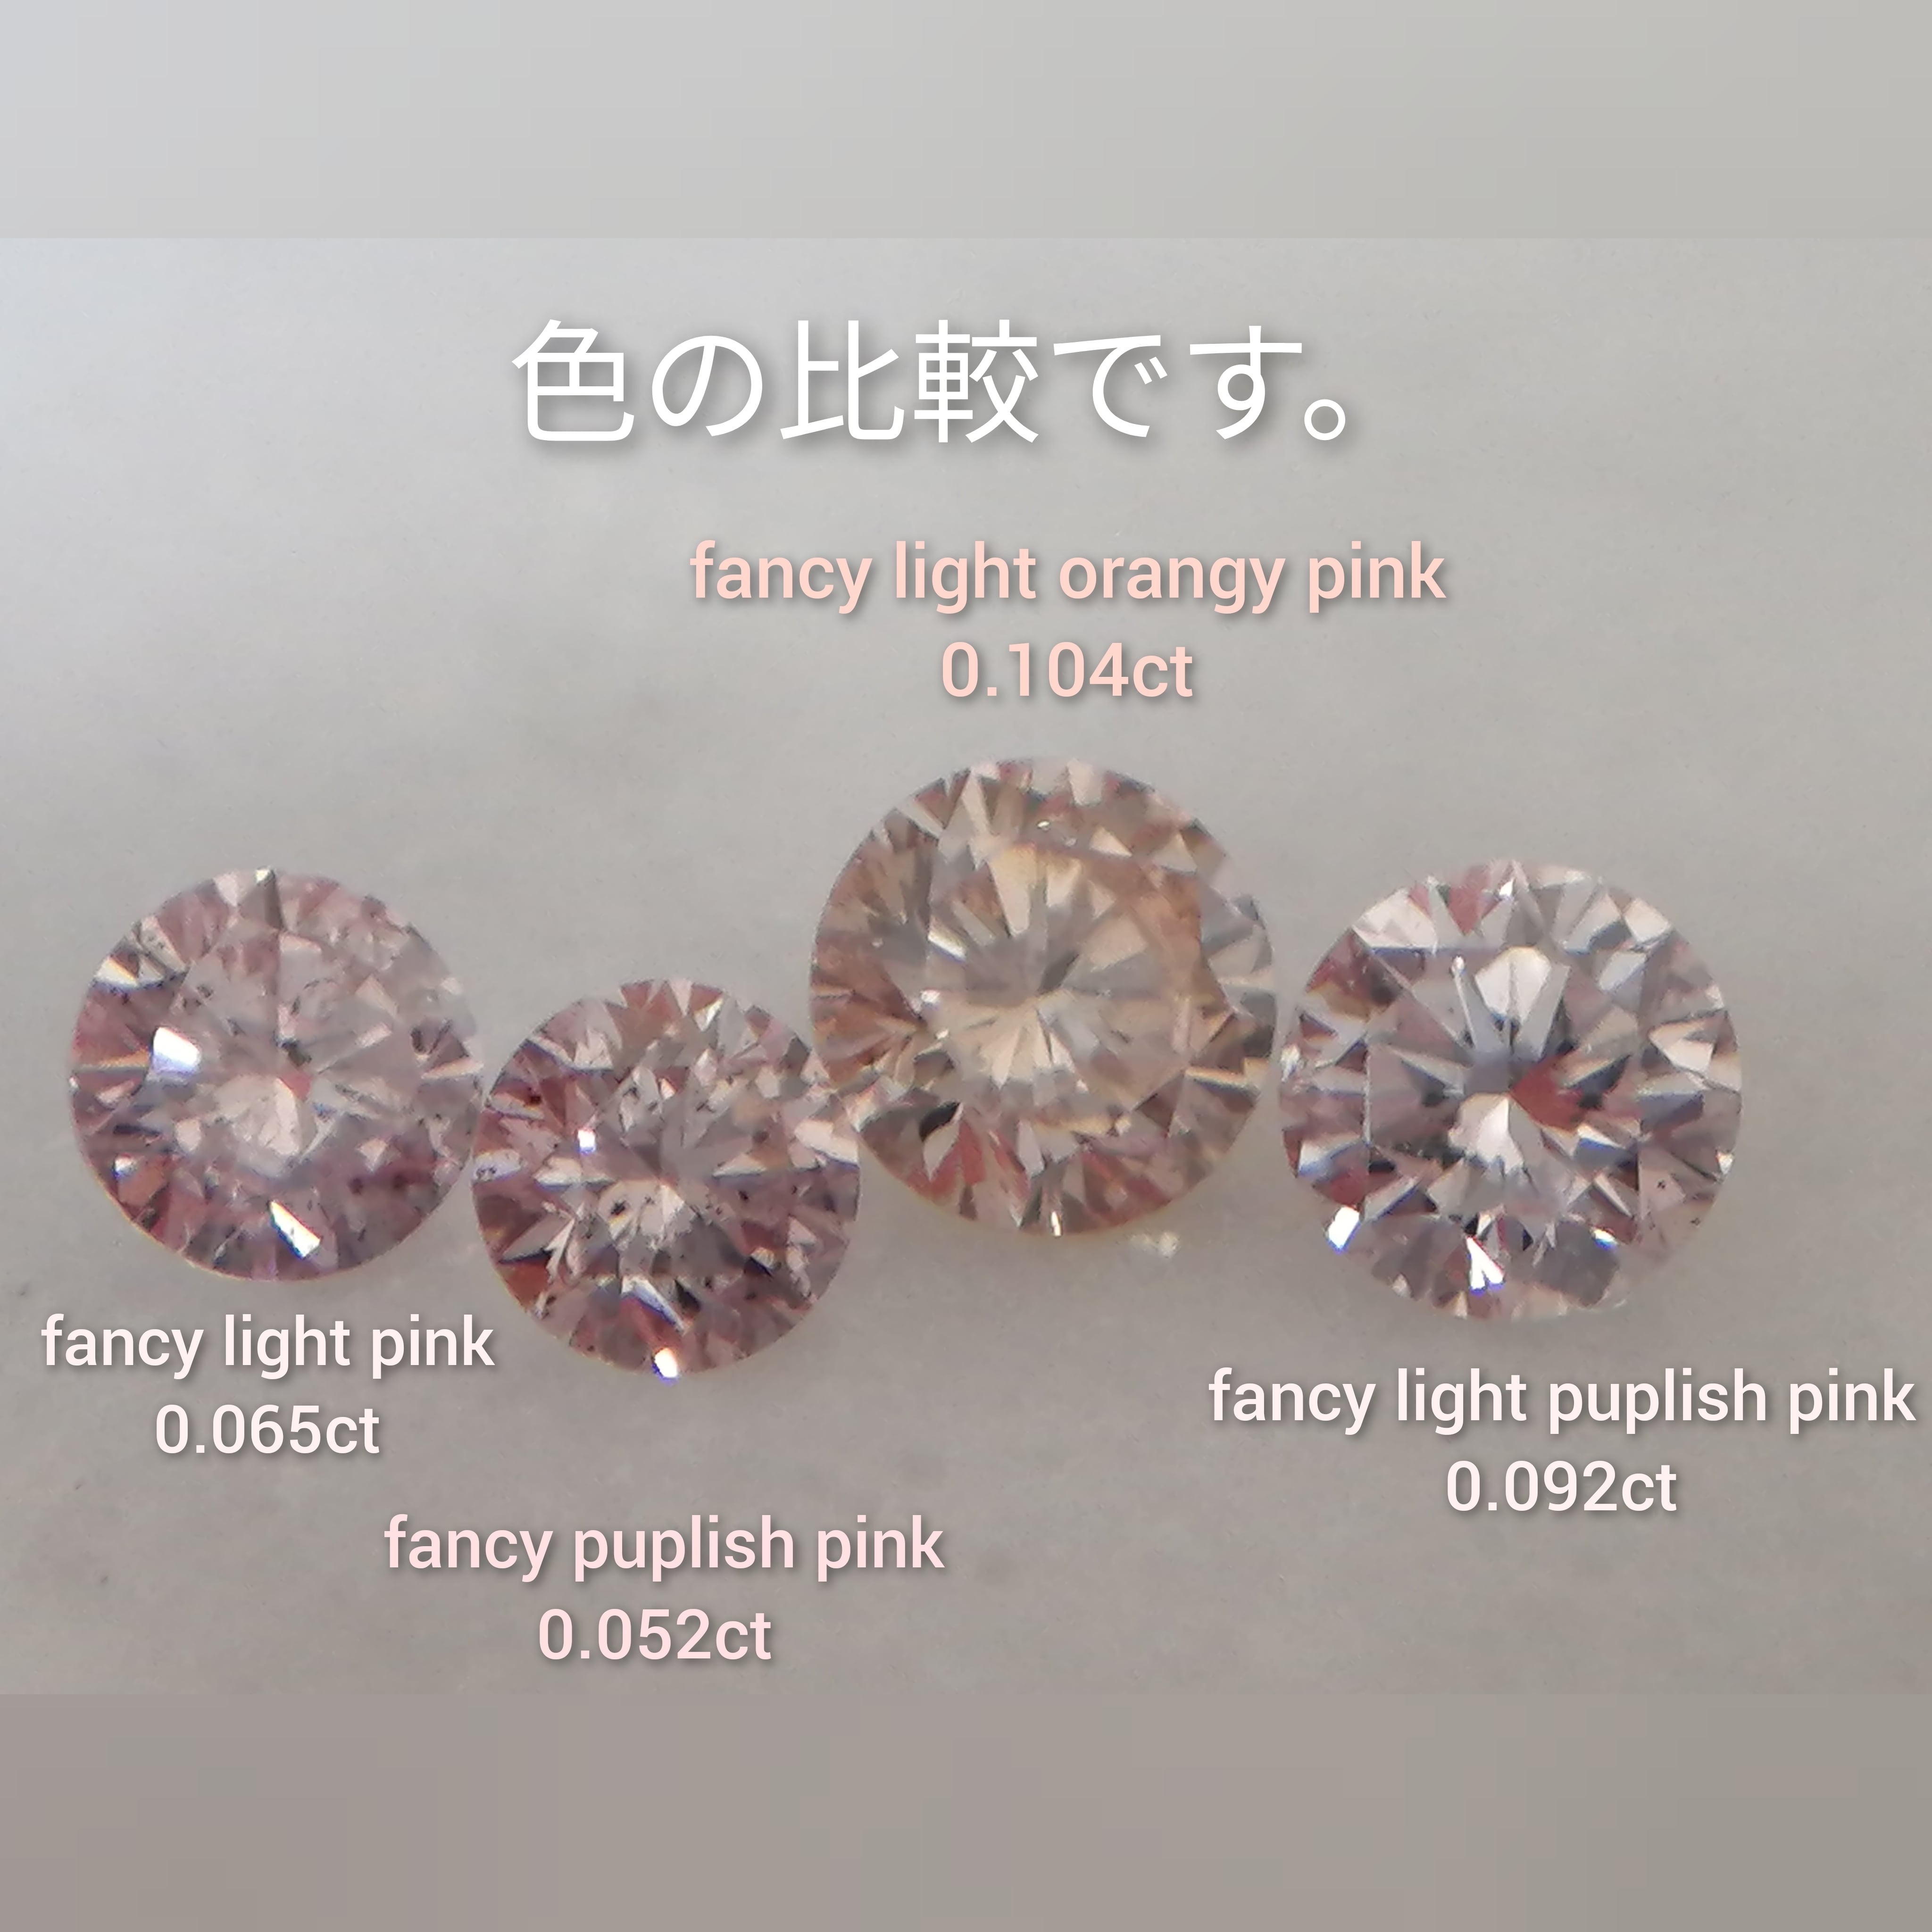 ピンクダイヤモンドルース 0.052ct fancy purplish pink I1(CGL